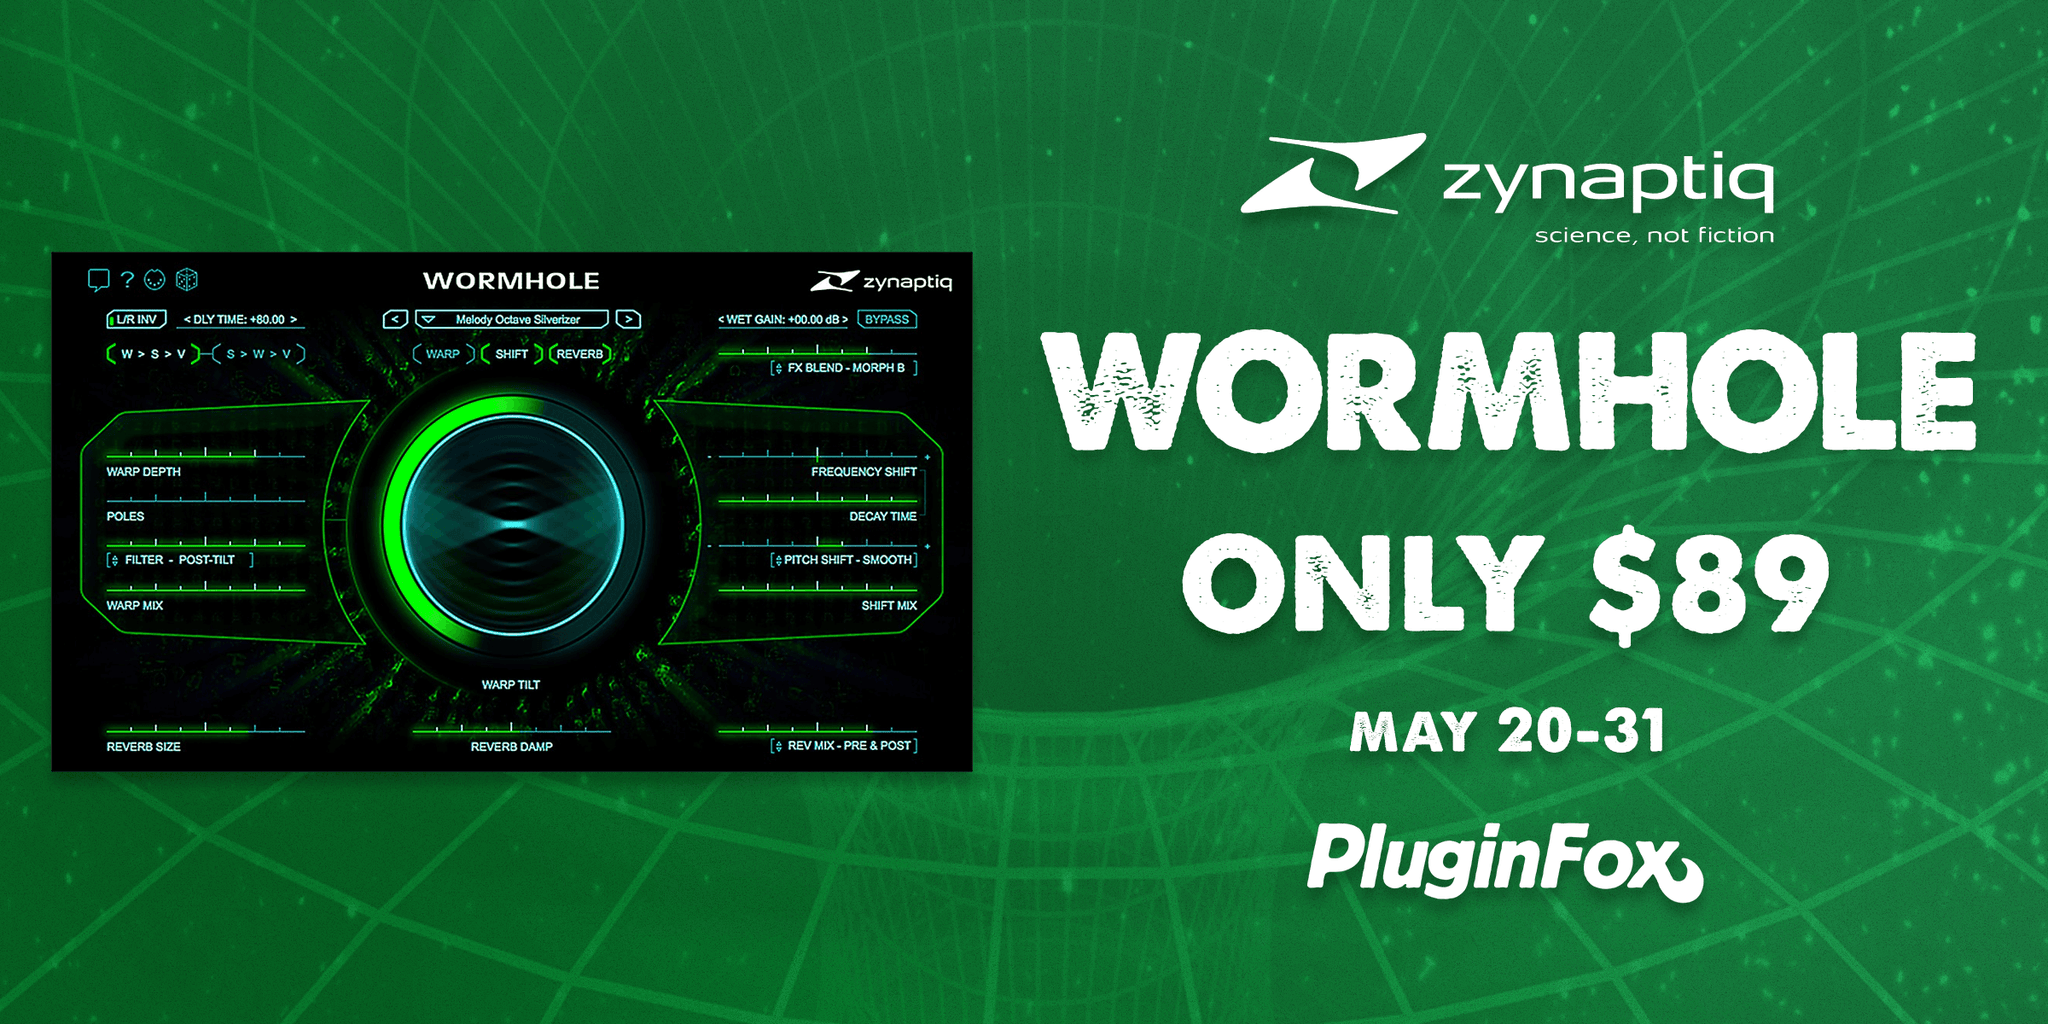 Zynaptiq Wormhole Sale - May 20-31